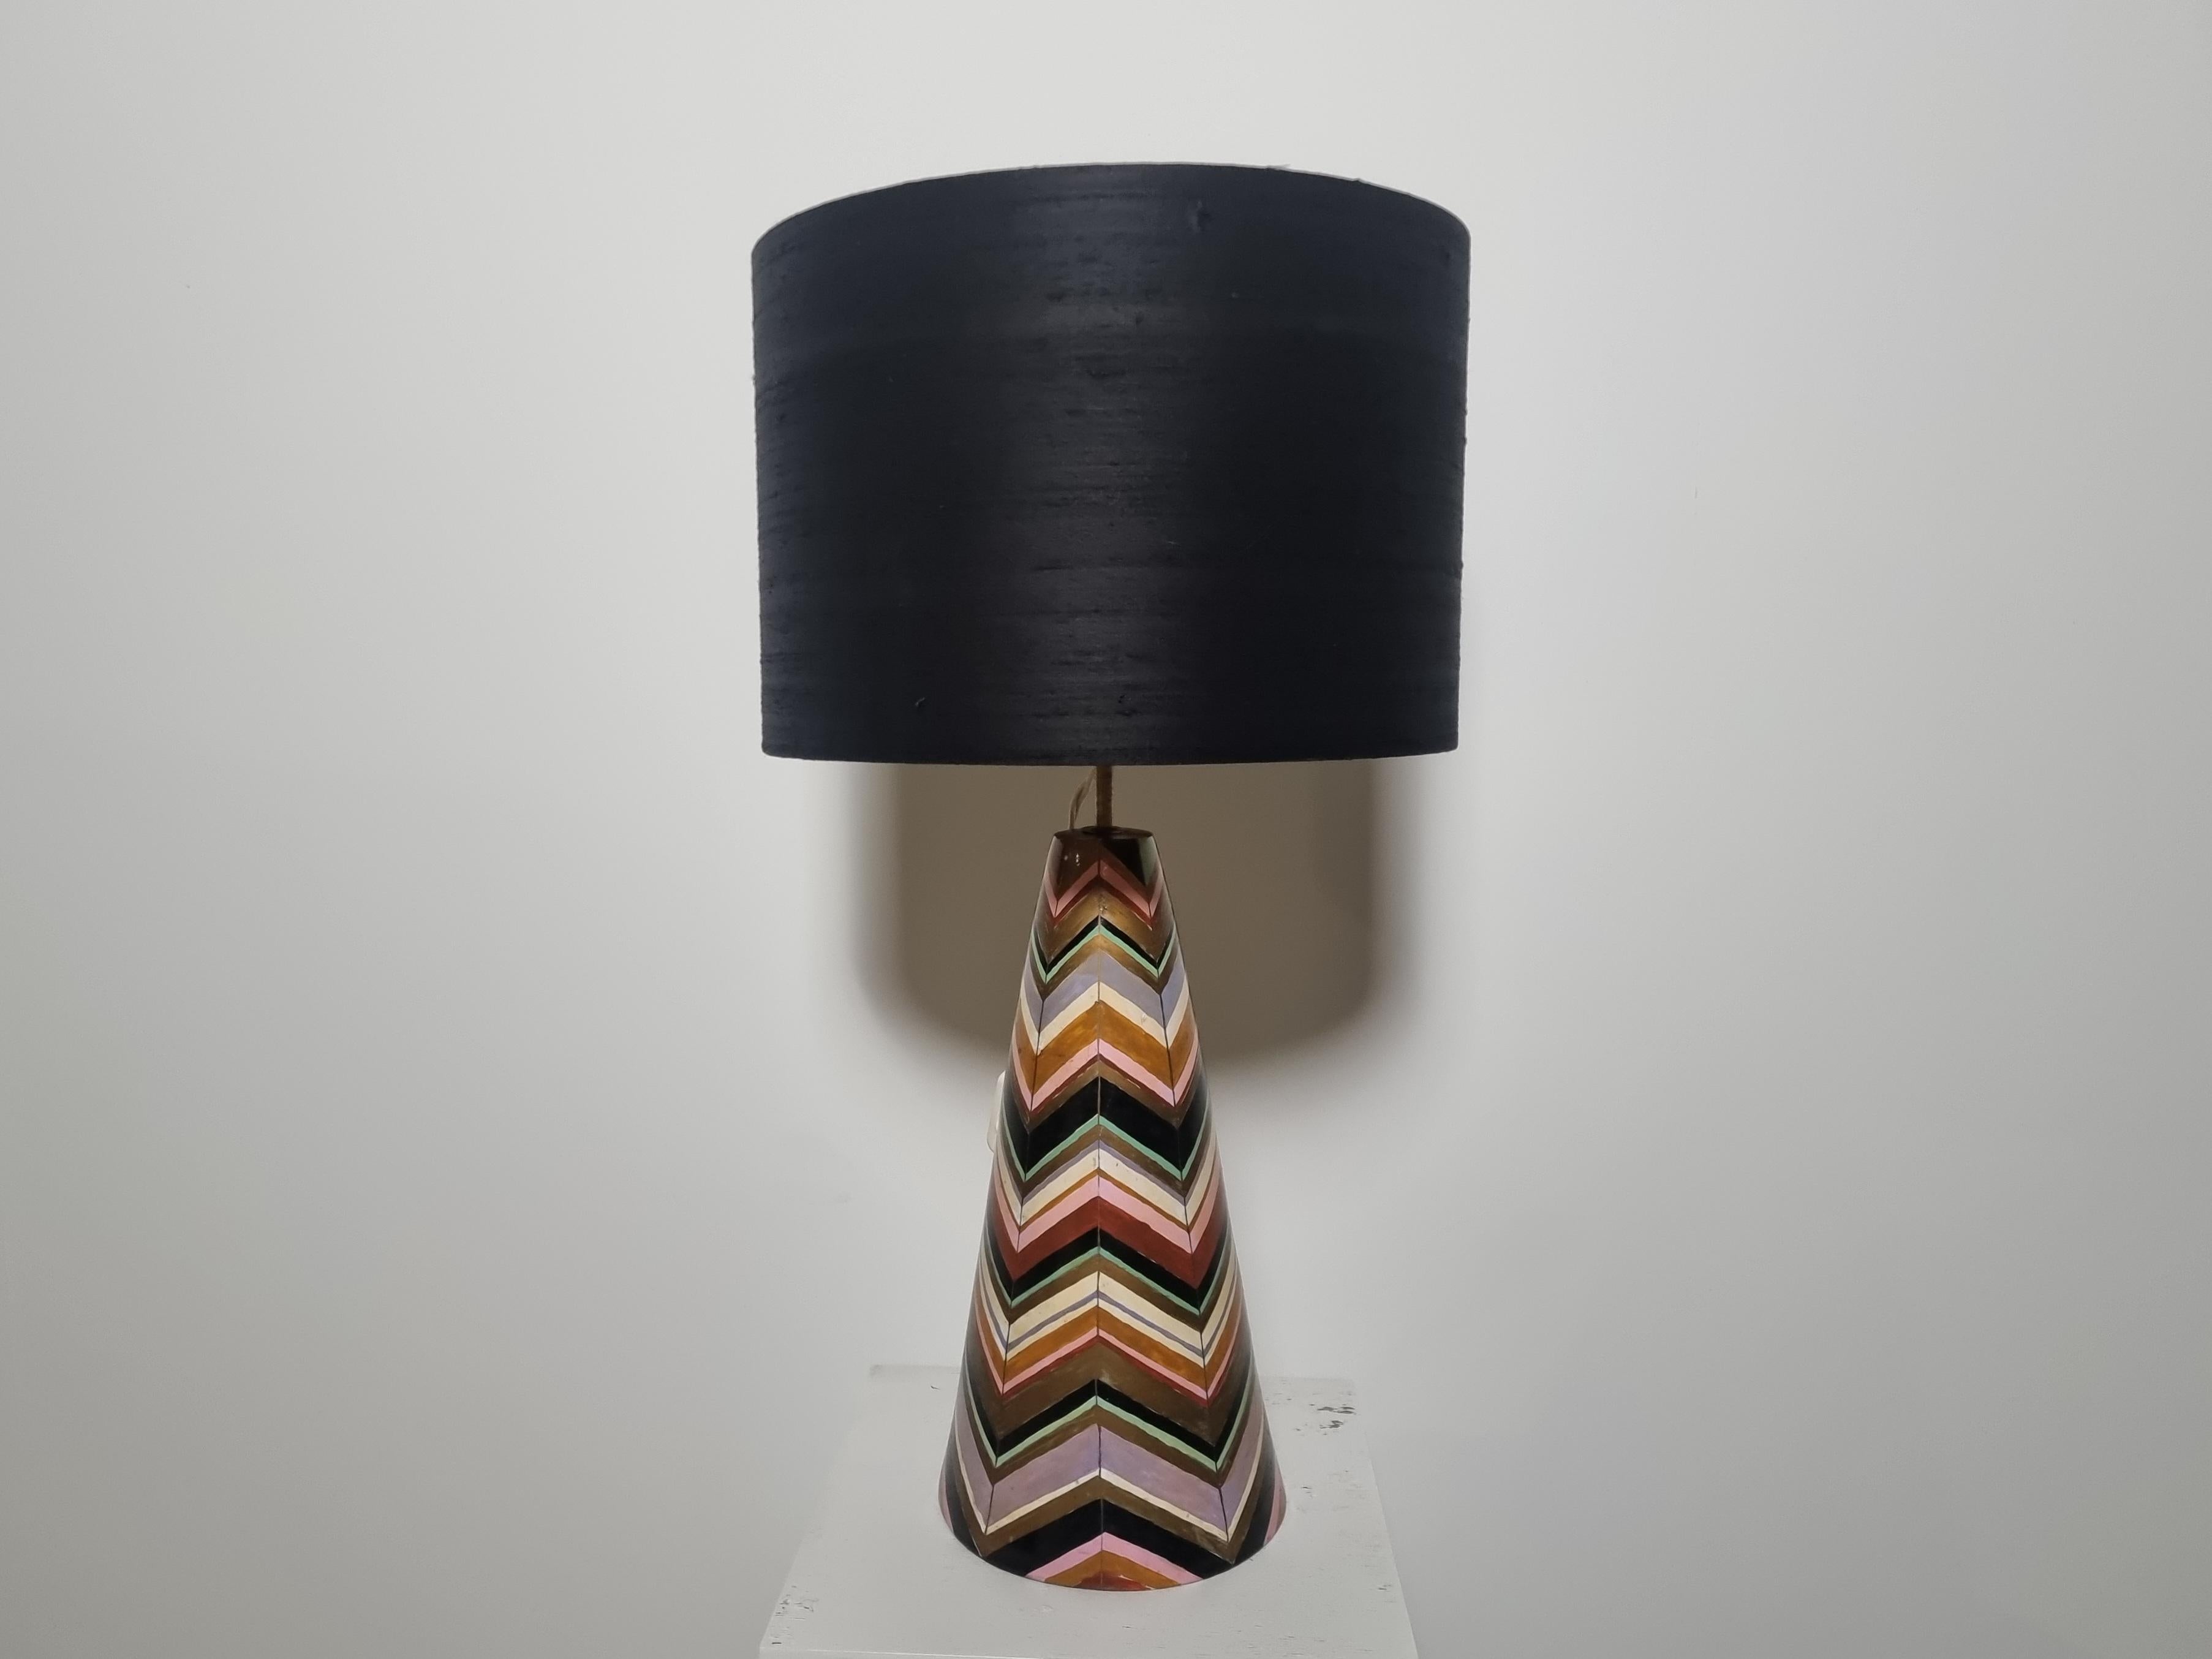 Lampe en céramique à décor laqué multicolore peint à la main, l'abat-jour en noir et or intérieur est fait à la main à partir de tissu d'intérieur, Italie, années 1970.